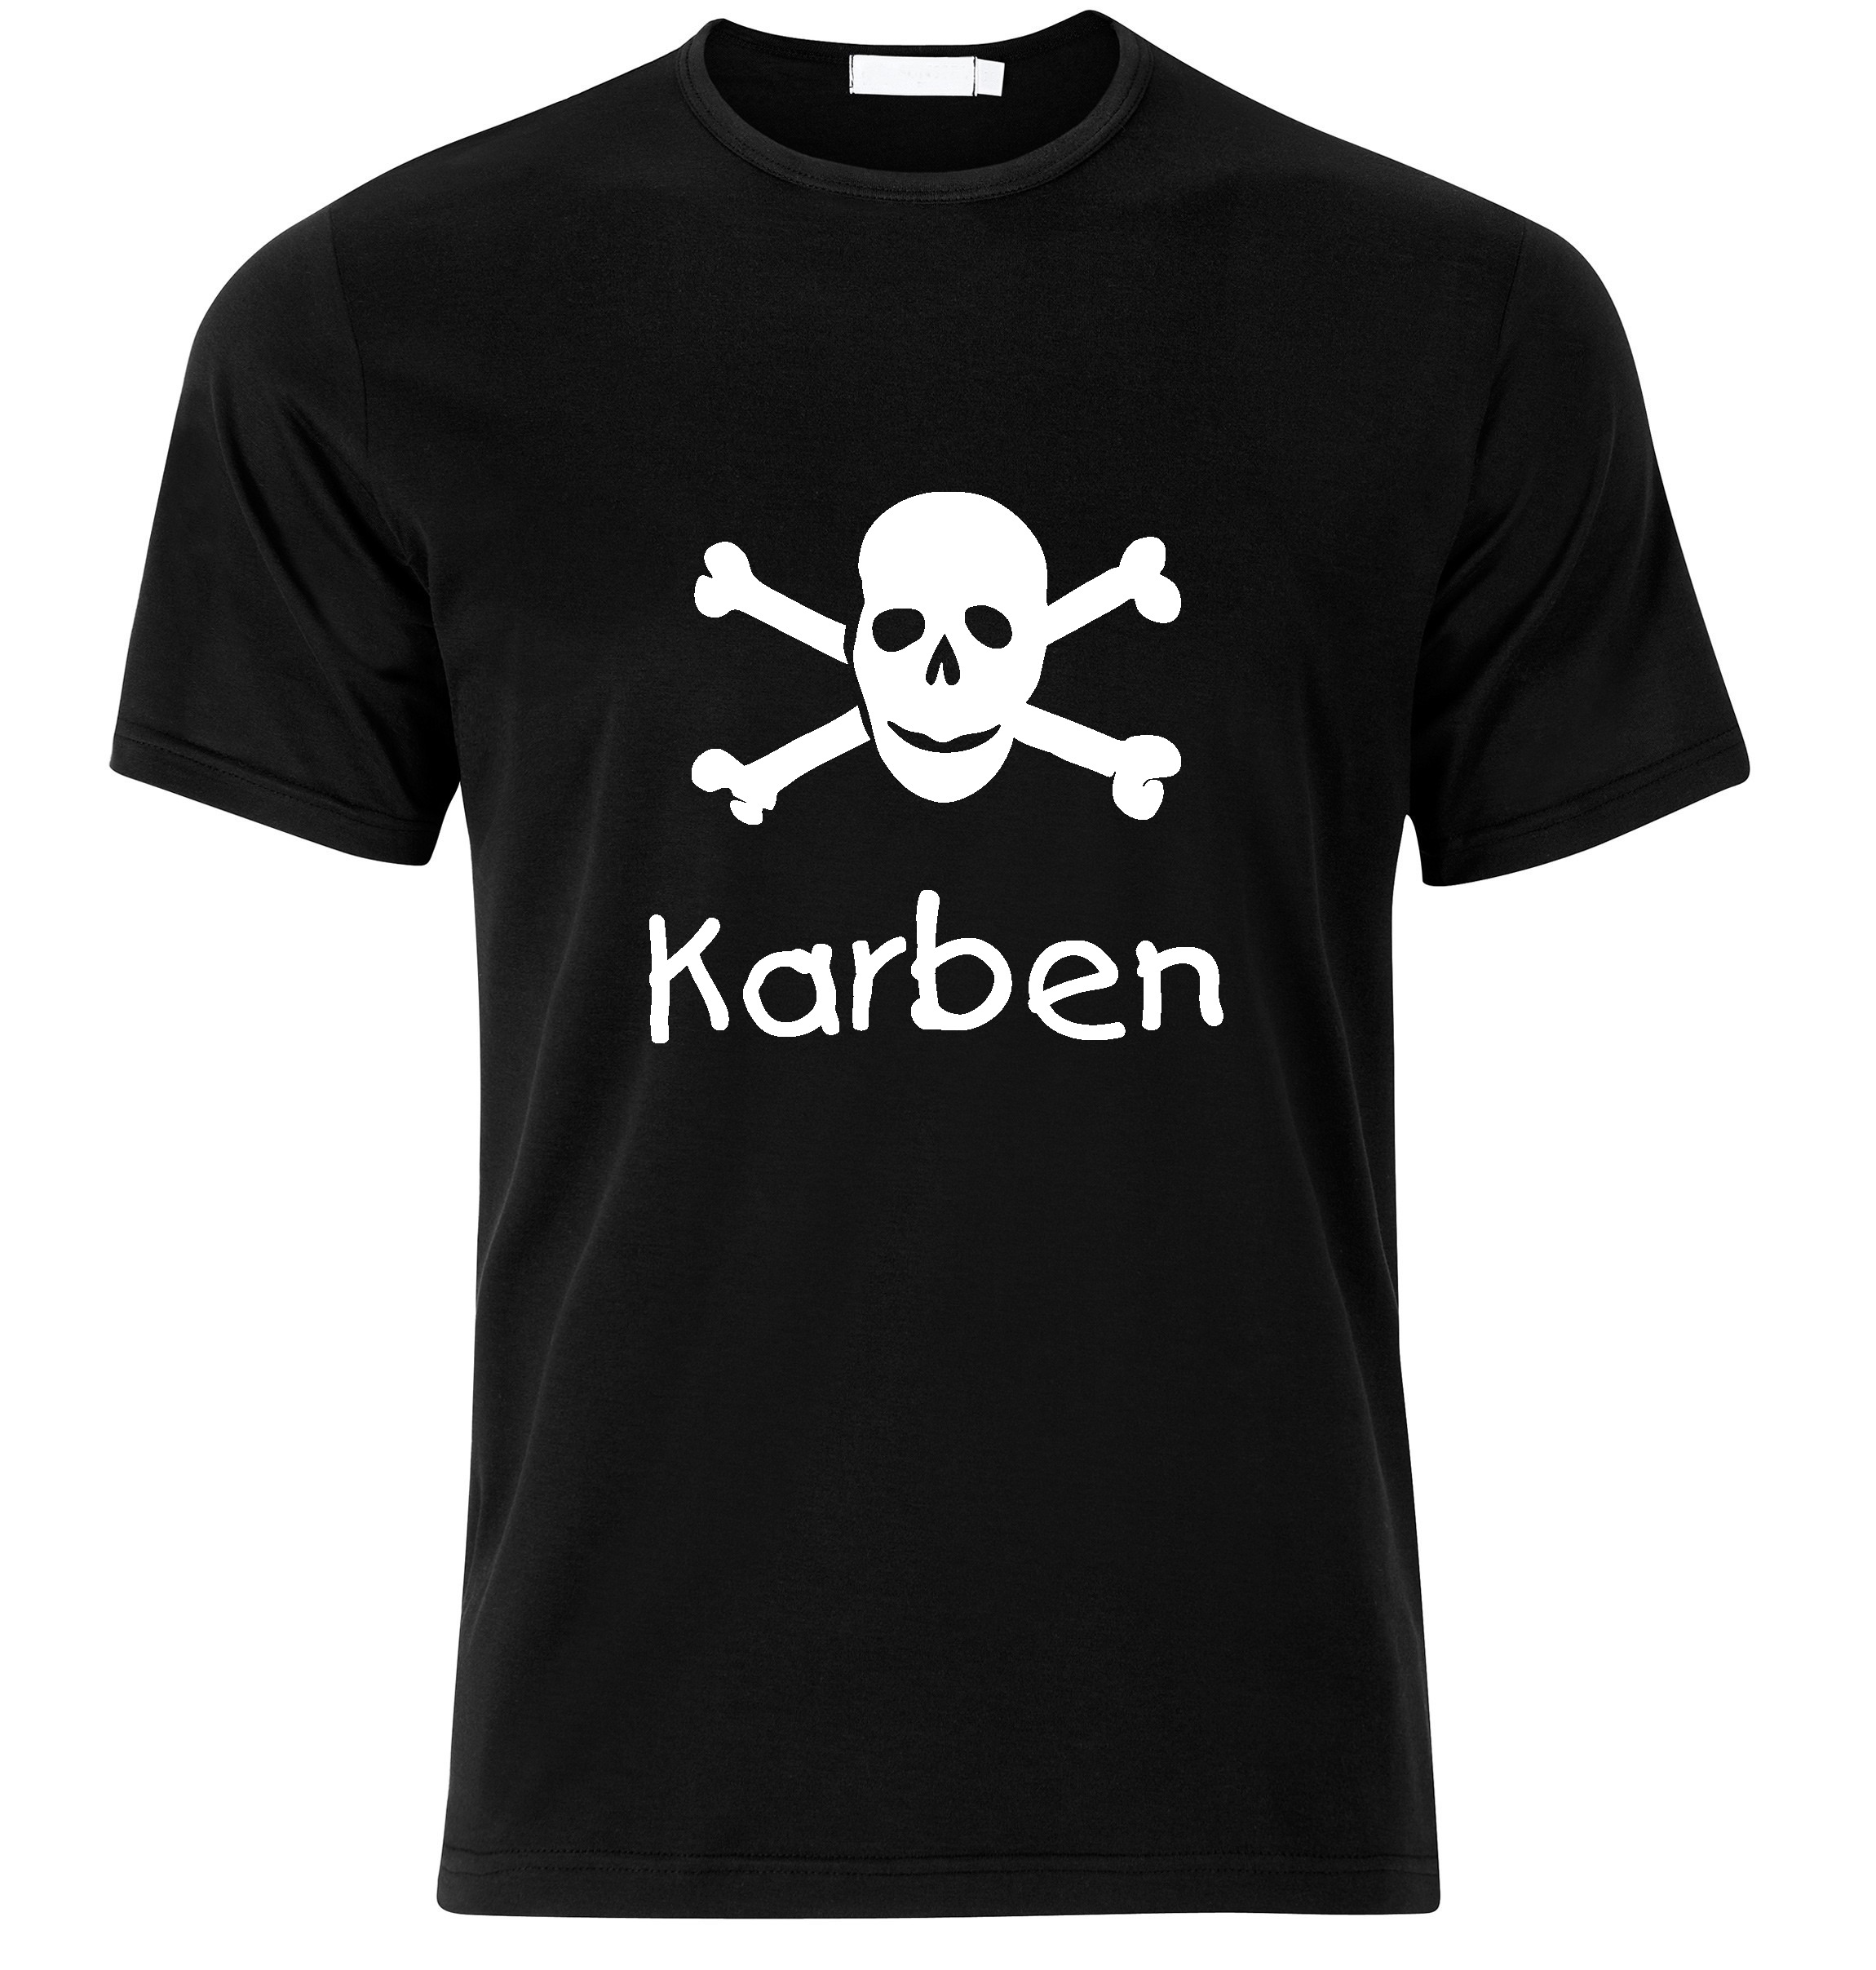 T-Shirt Karben Jolly Roger, Totenkopf